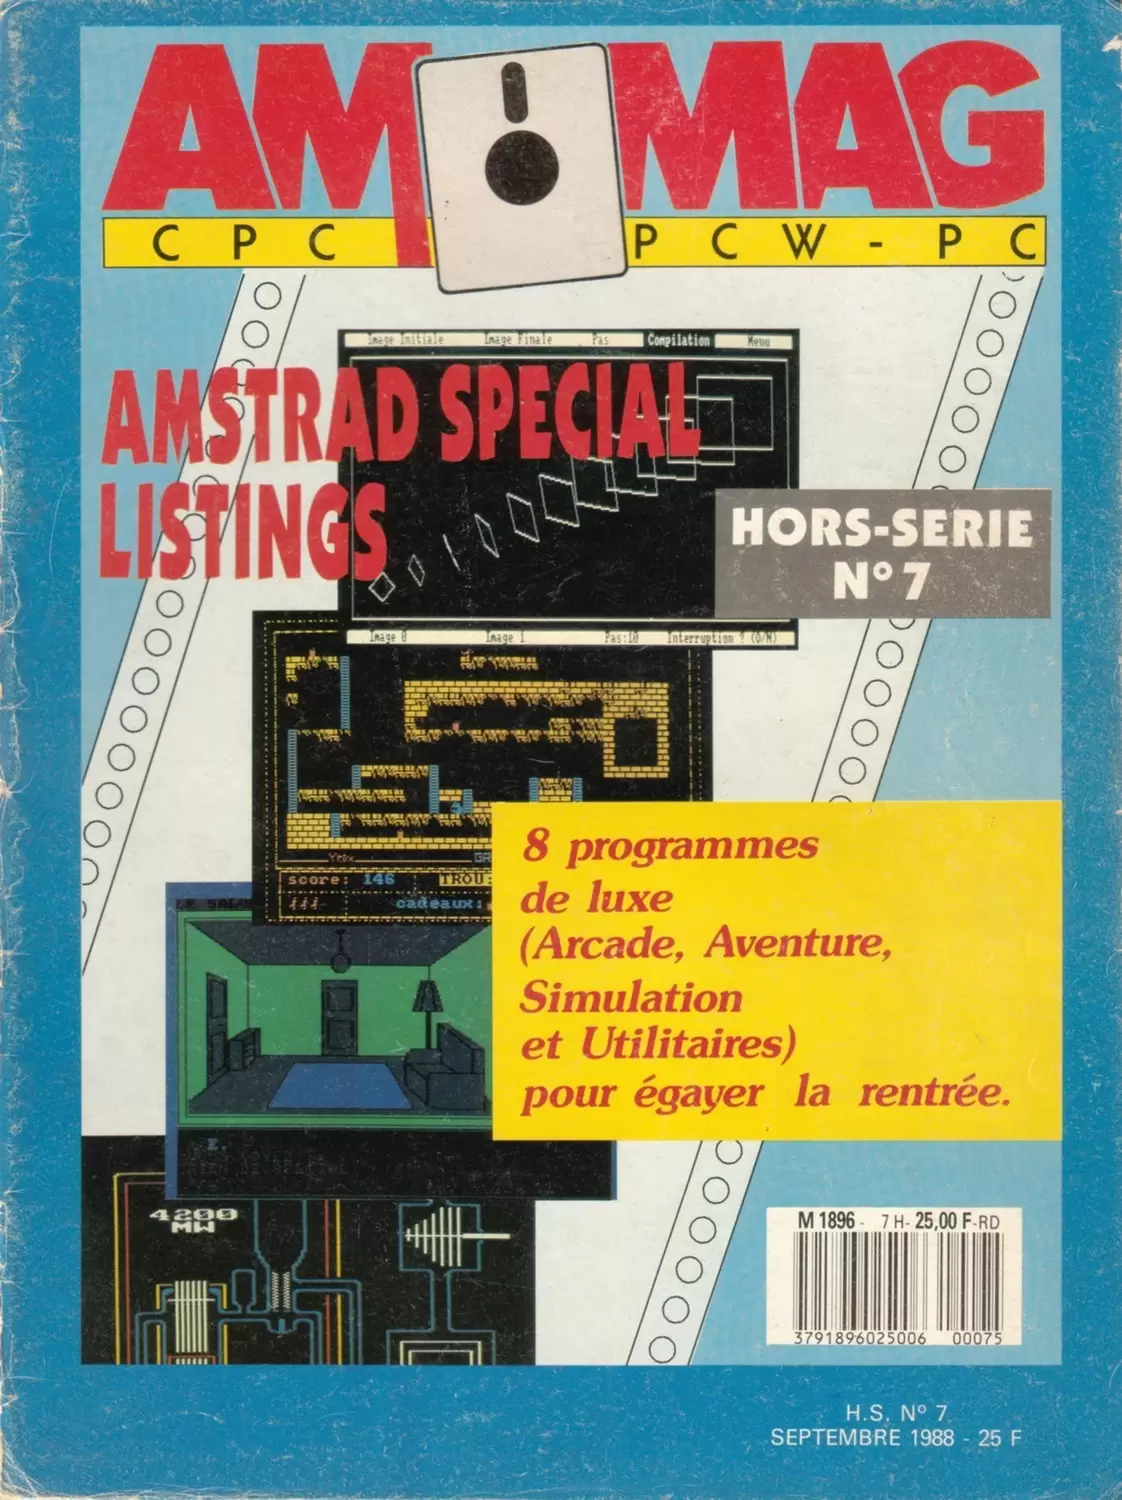 Amstrad Magazine - Am Mag - Hors série n°7